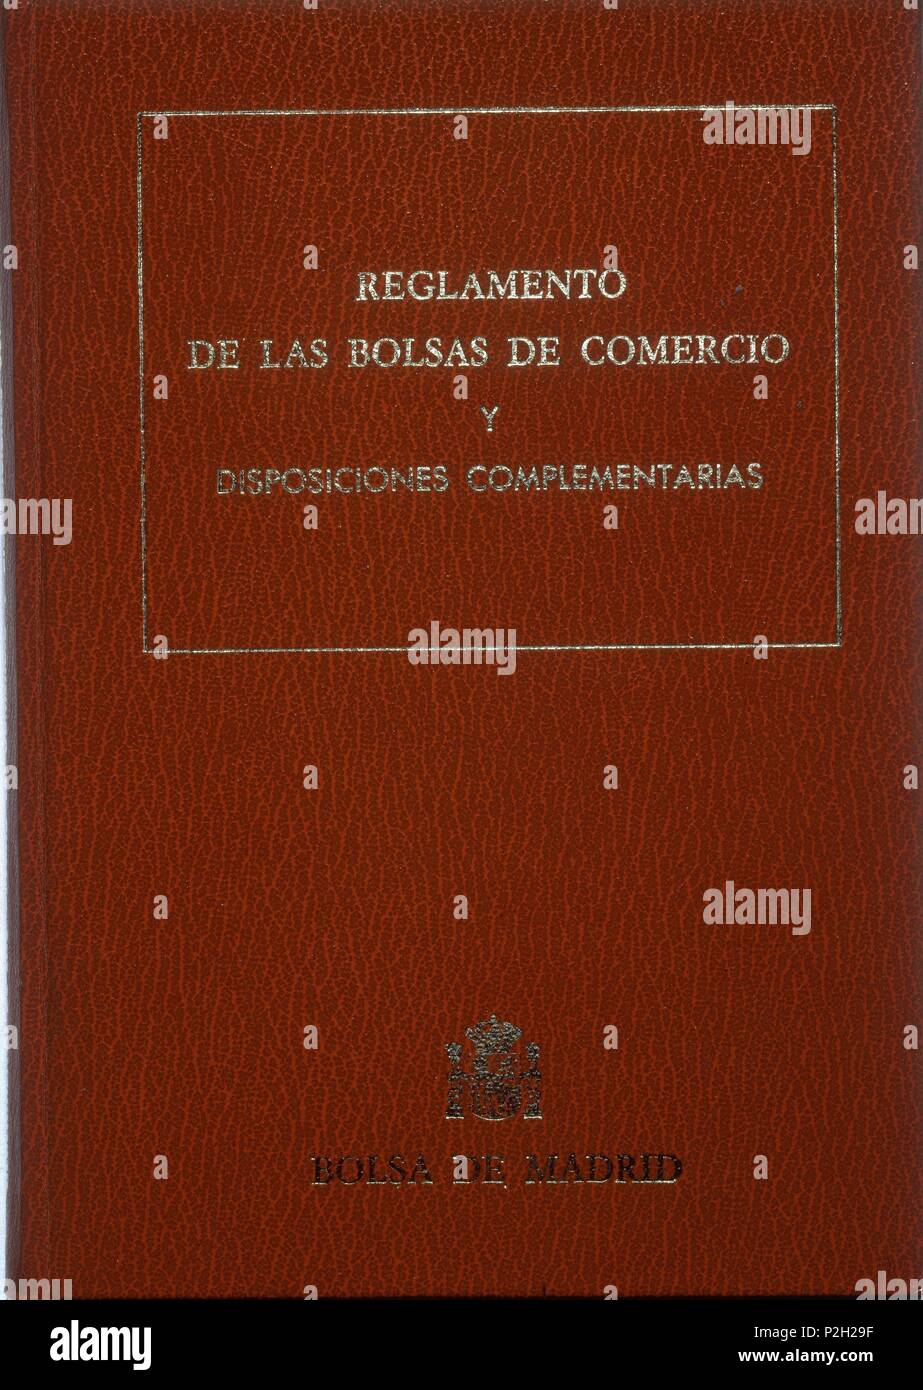 REGLAMENTO DE LAS BOLSAS DE COMERCIO-ENCUADERNAC 1967-. Location: BOLSA DE COMERCIO-COLECCION, MADRID, SPAIN. Stock Photo